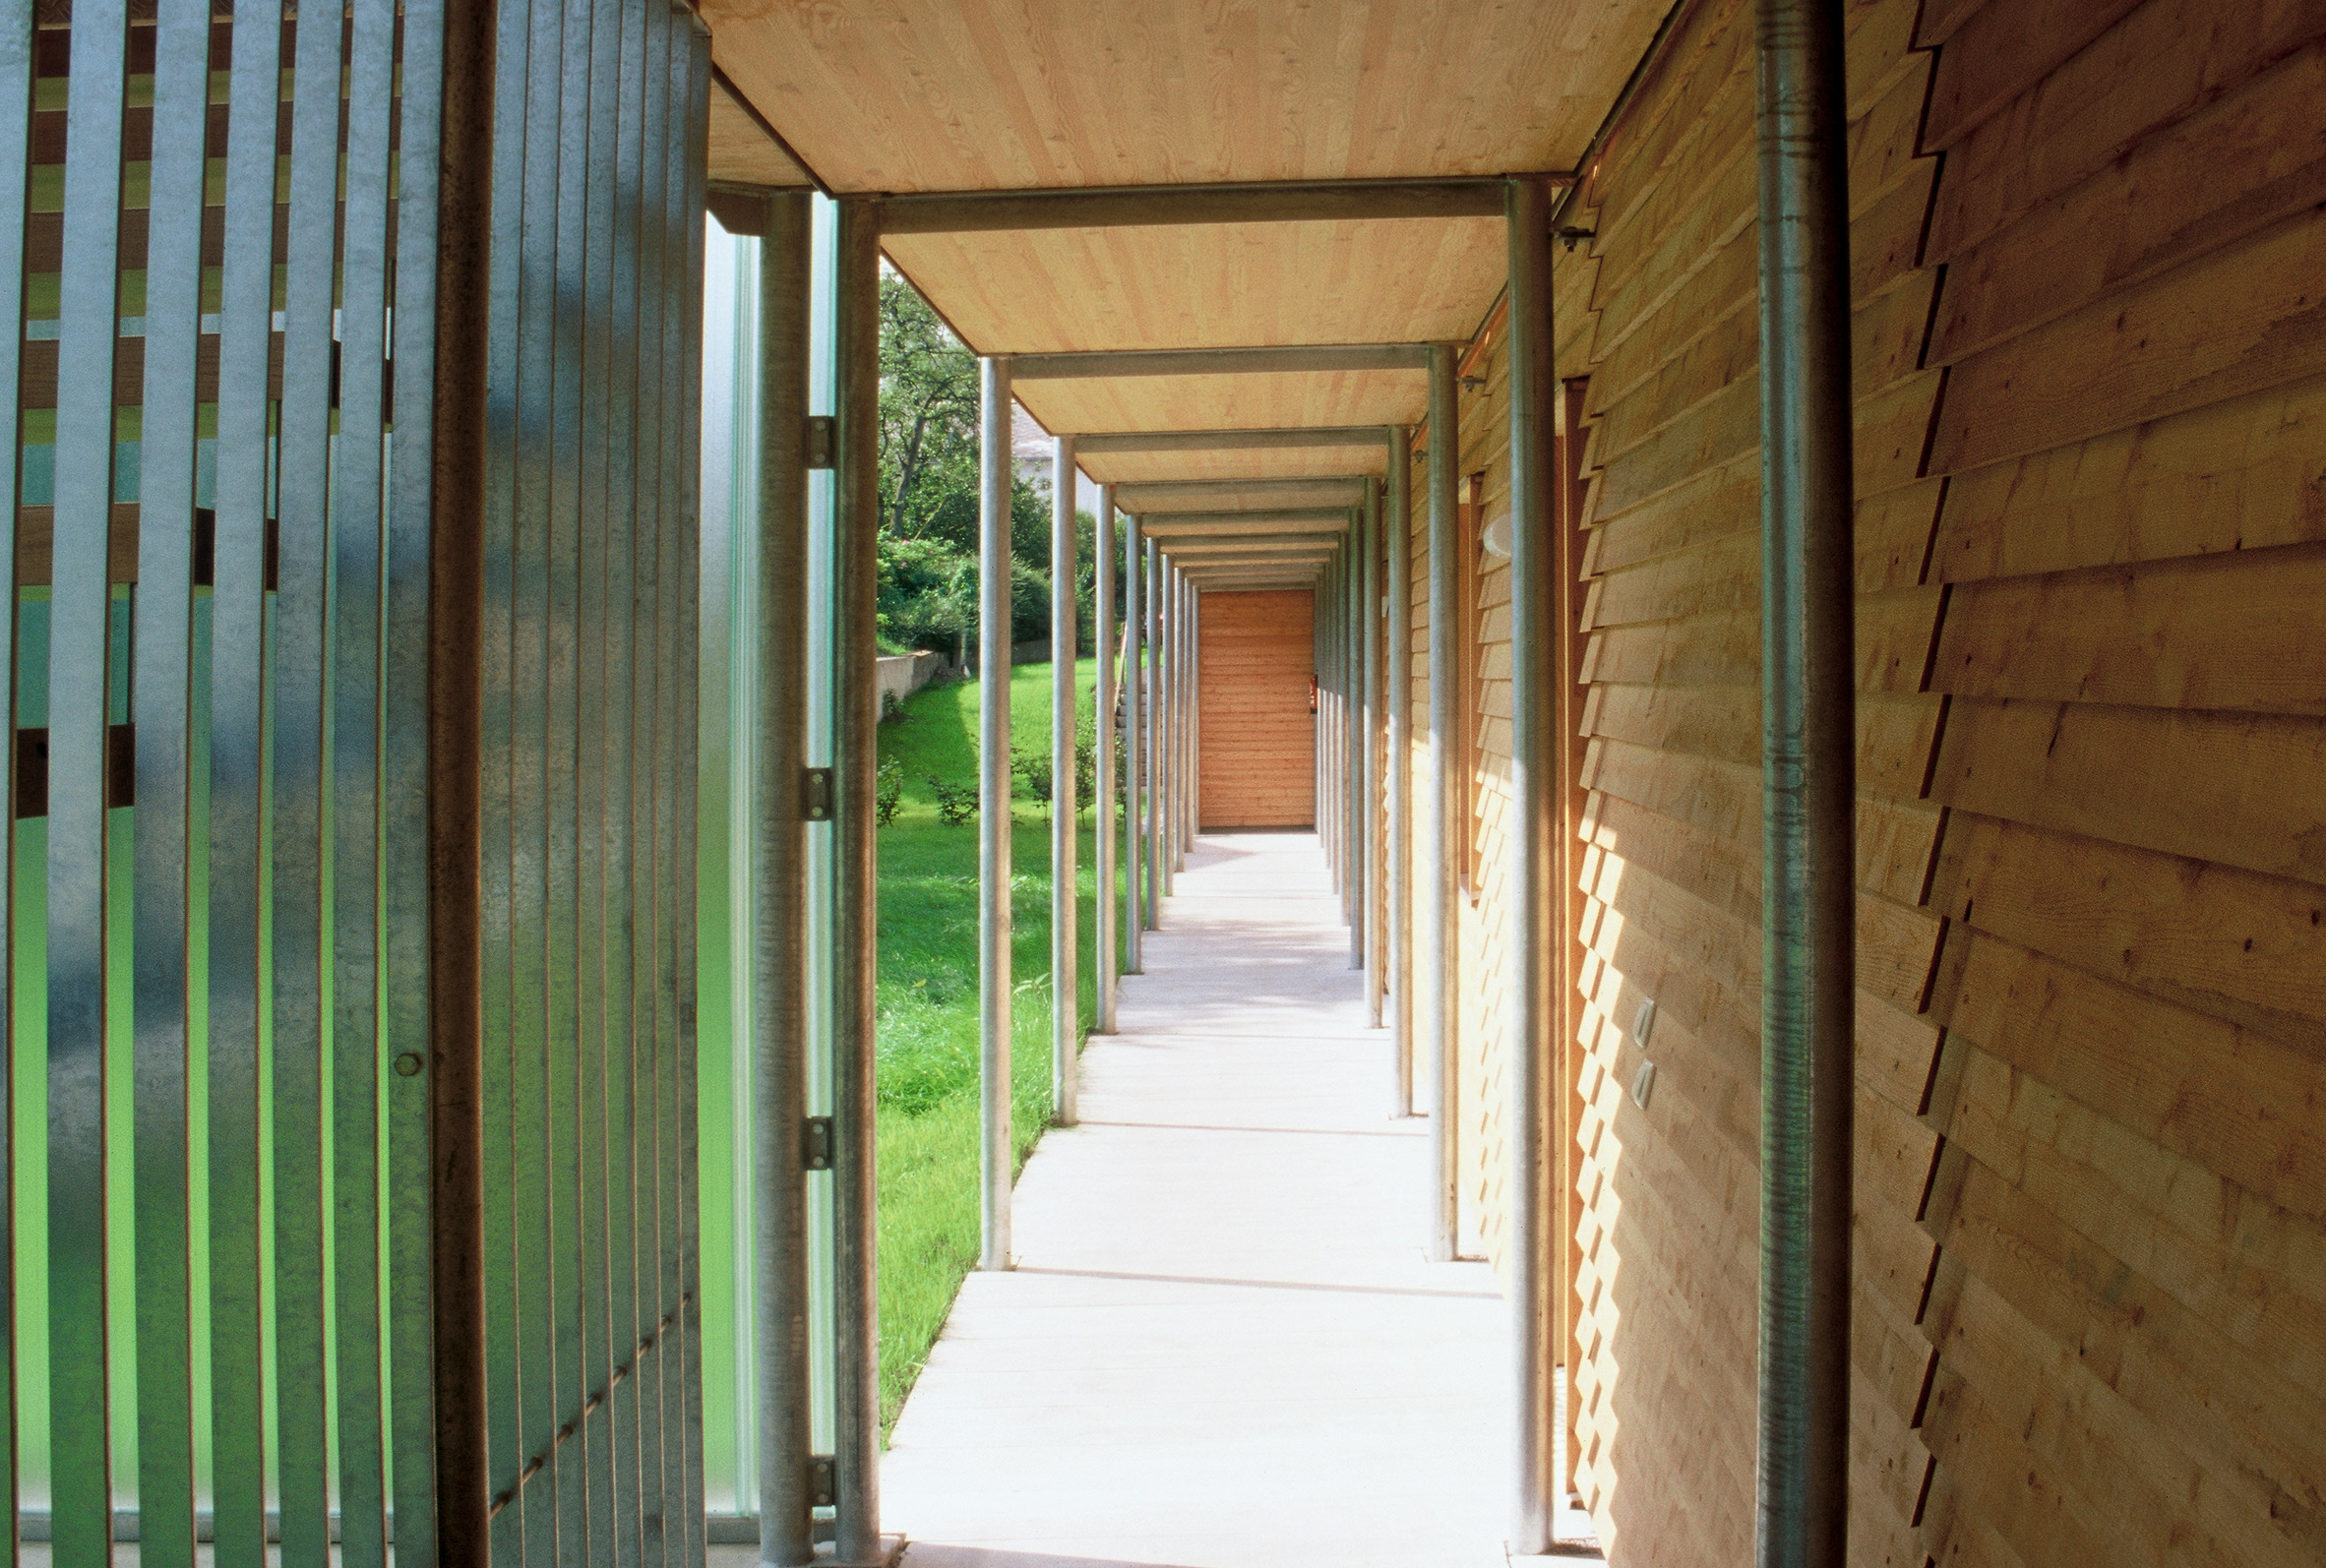 Hallway in Ölzbündt building in Austria by HK Architekten